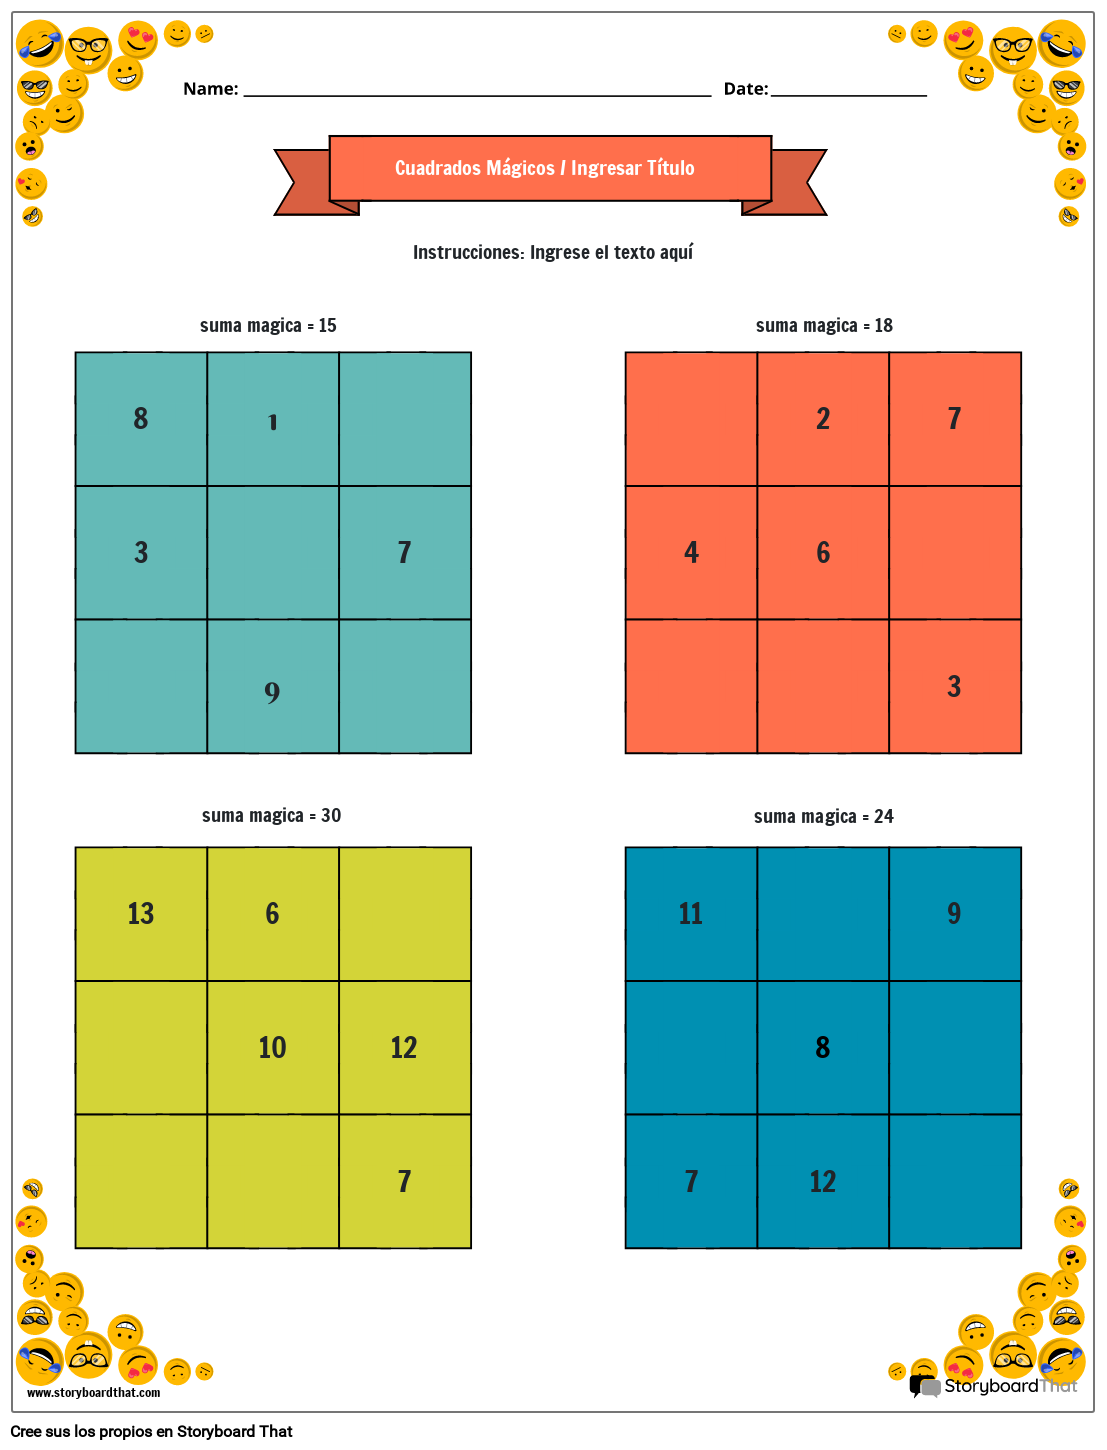 Hoja de trabajo de cuadrados mágicos 3x3 con borde de carita sonriente